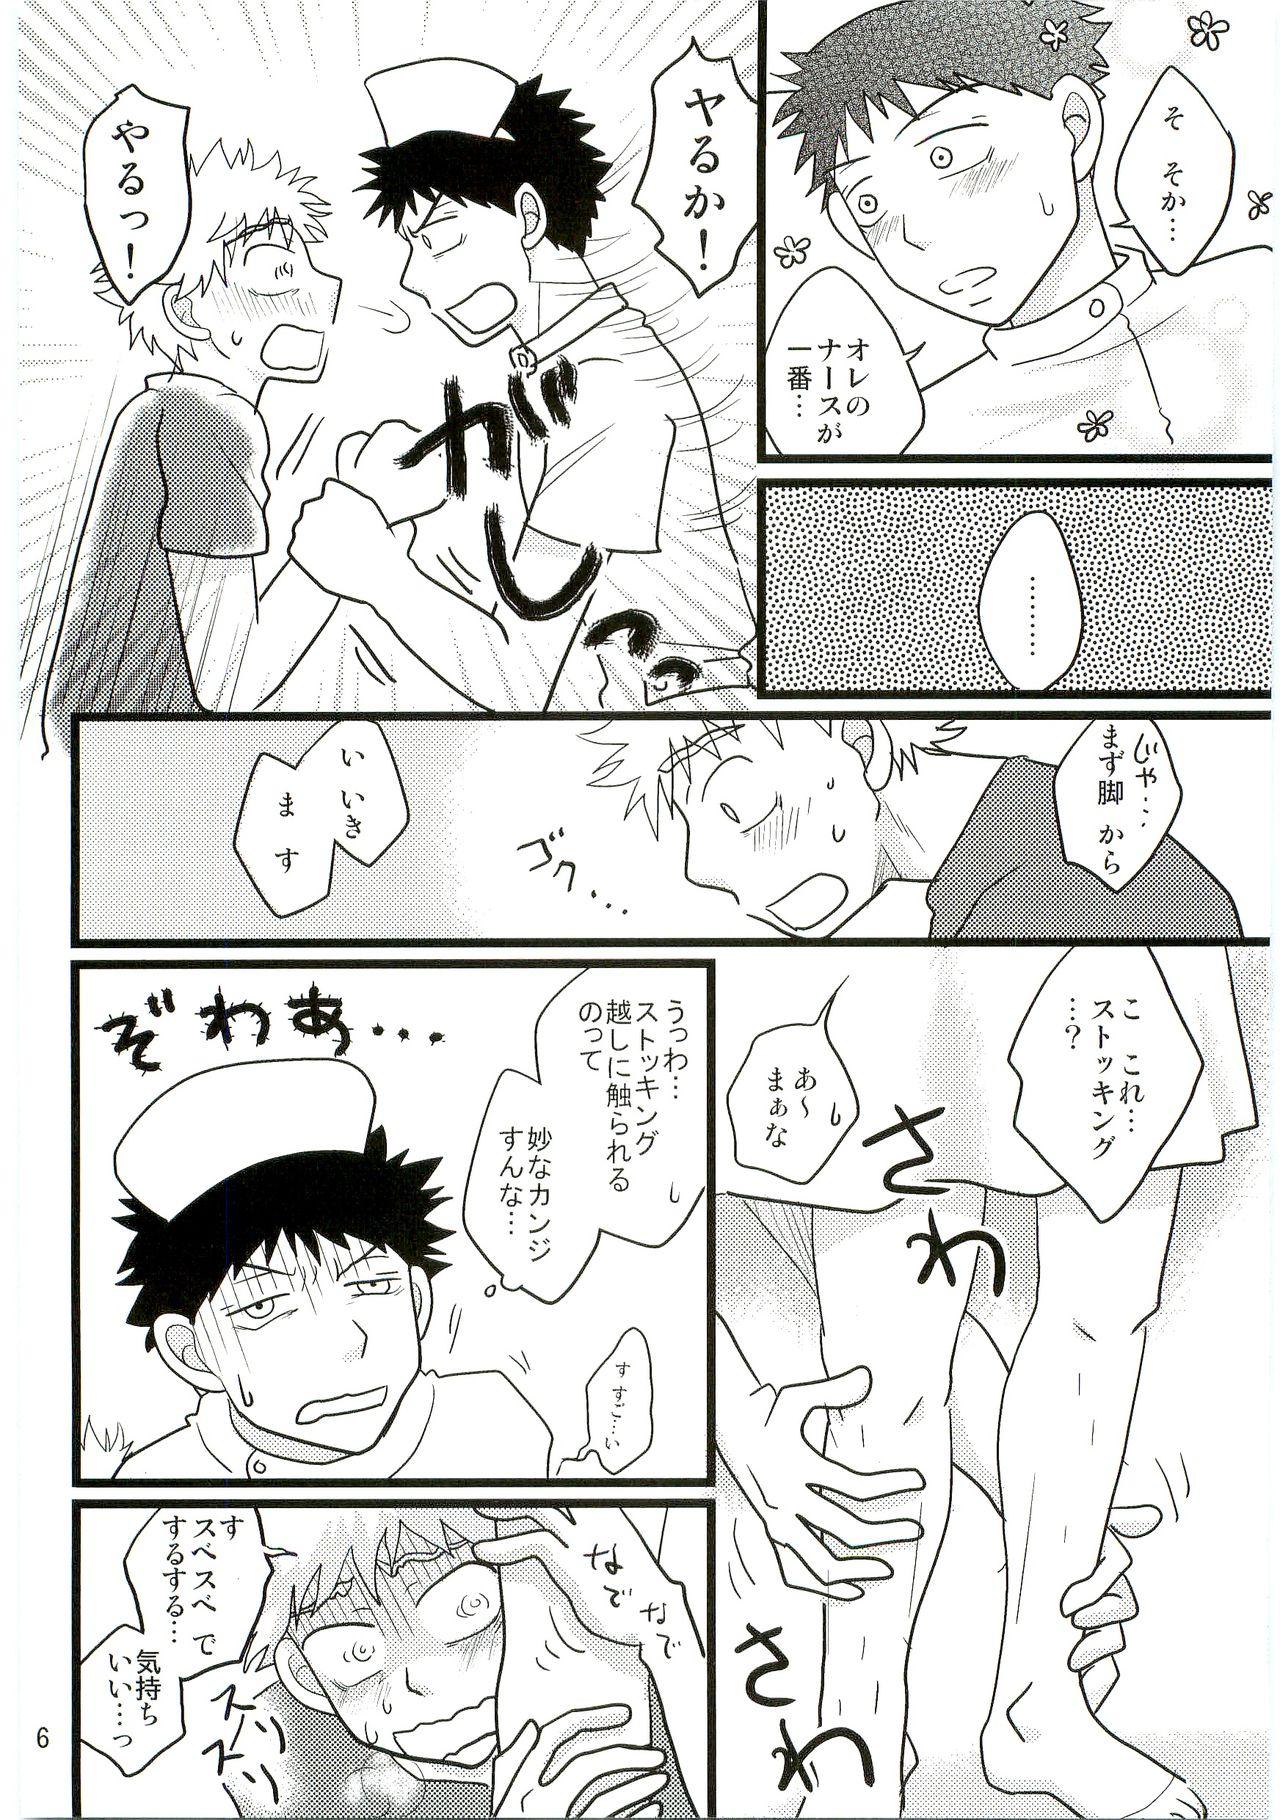 Abg Kimi no Chuusha wa 1-man Barrel - Ookiku furikabutte Sentones - Page 5